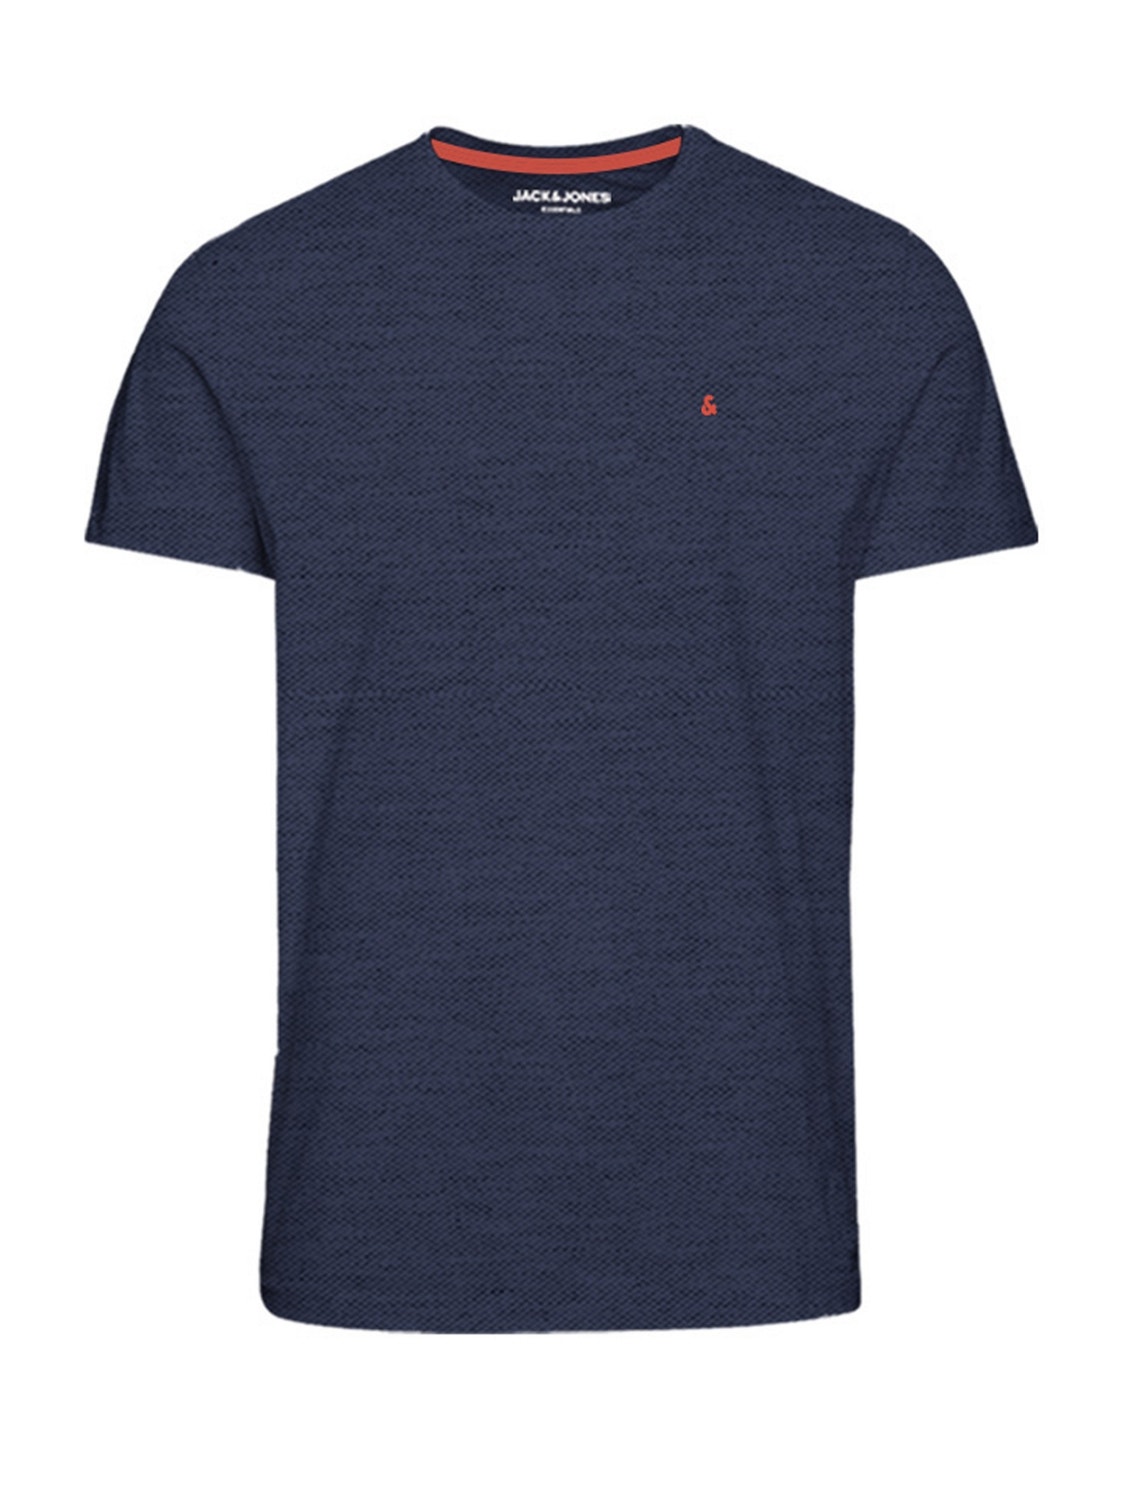 Jack & Jones Plus Size T-shirt Semplice -Denim Blue - 12253778